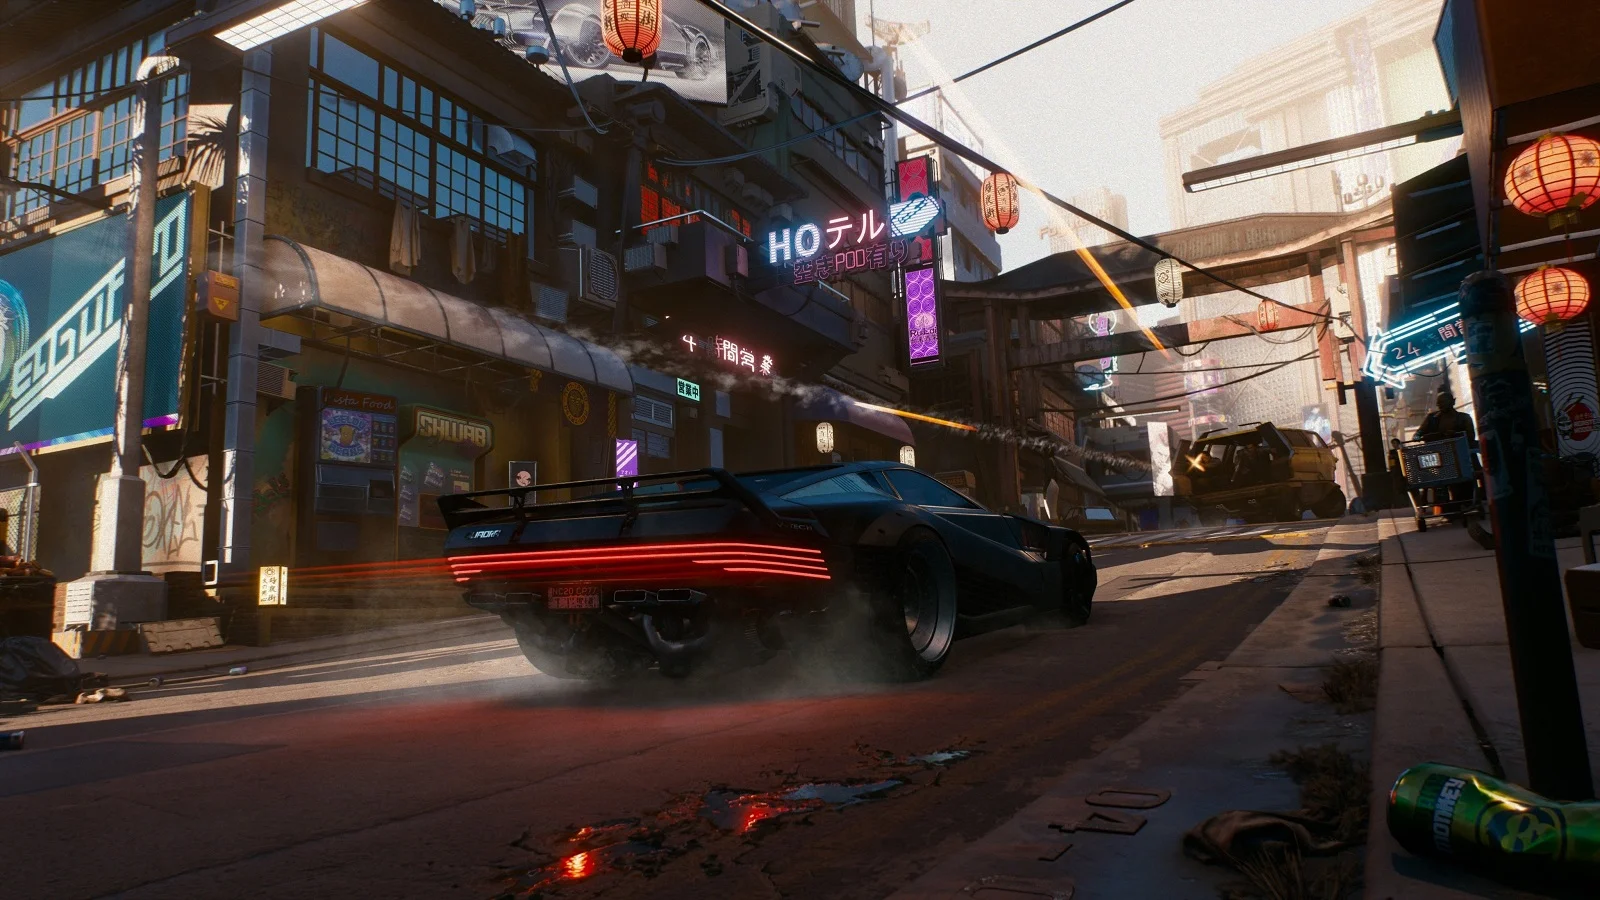 В Cyberpunk 2077 у игрока будет собственный гараж с различными автомобилями и мотоциклами - фото 1